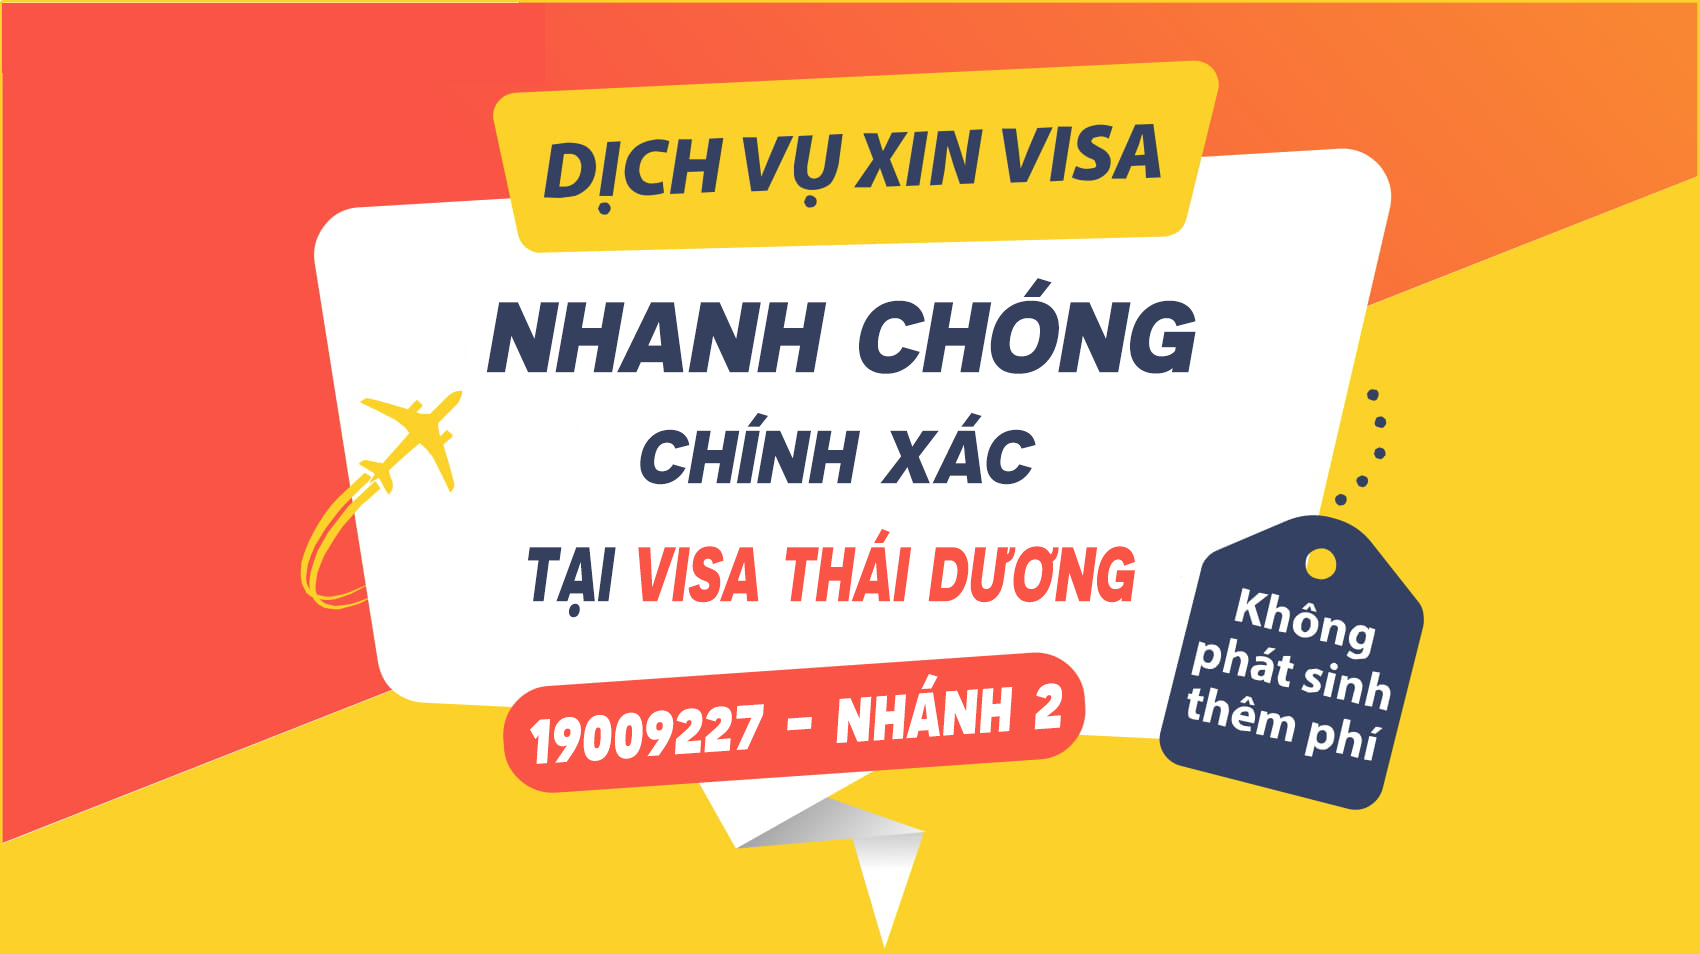 Visa du lịch Việt Nam cho người nước ngoài qua cửa khẩu Mộc Bài